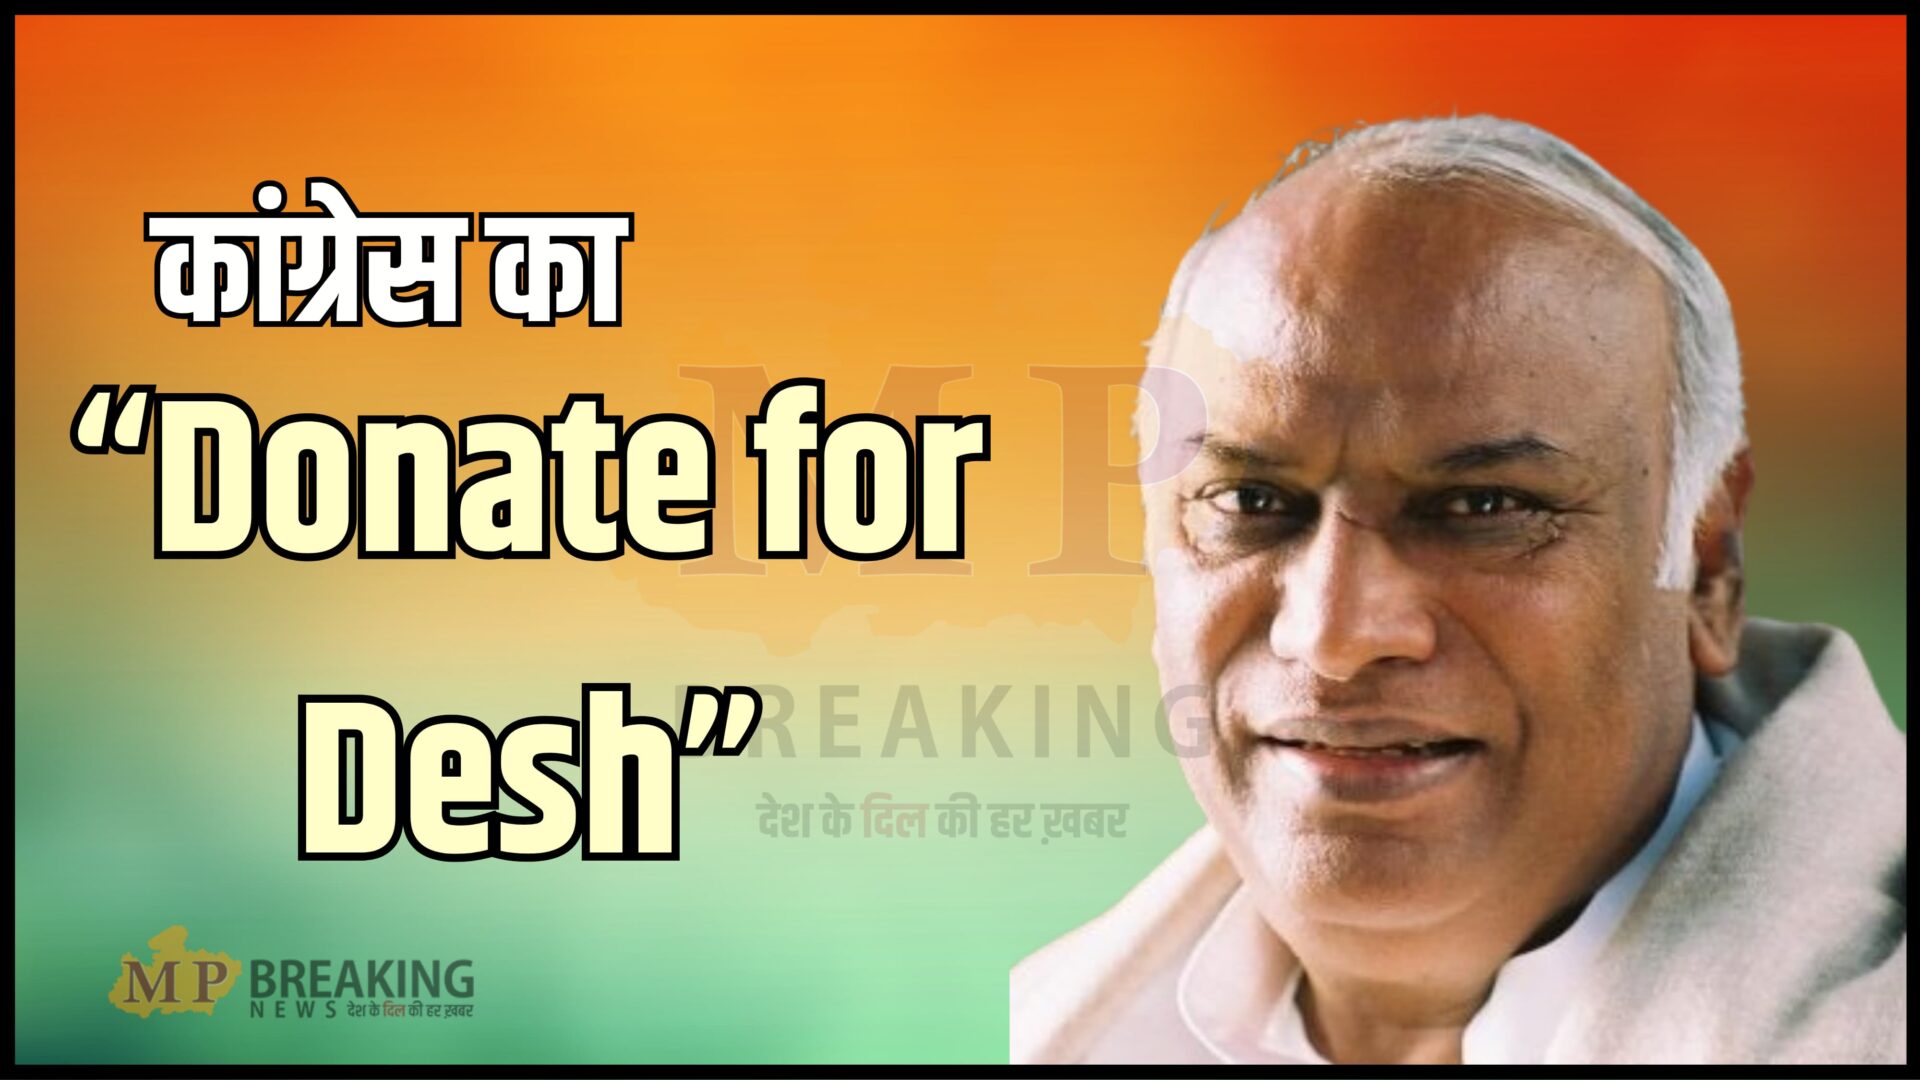 Congress Donate for Desh Campaign